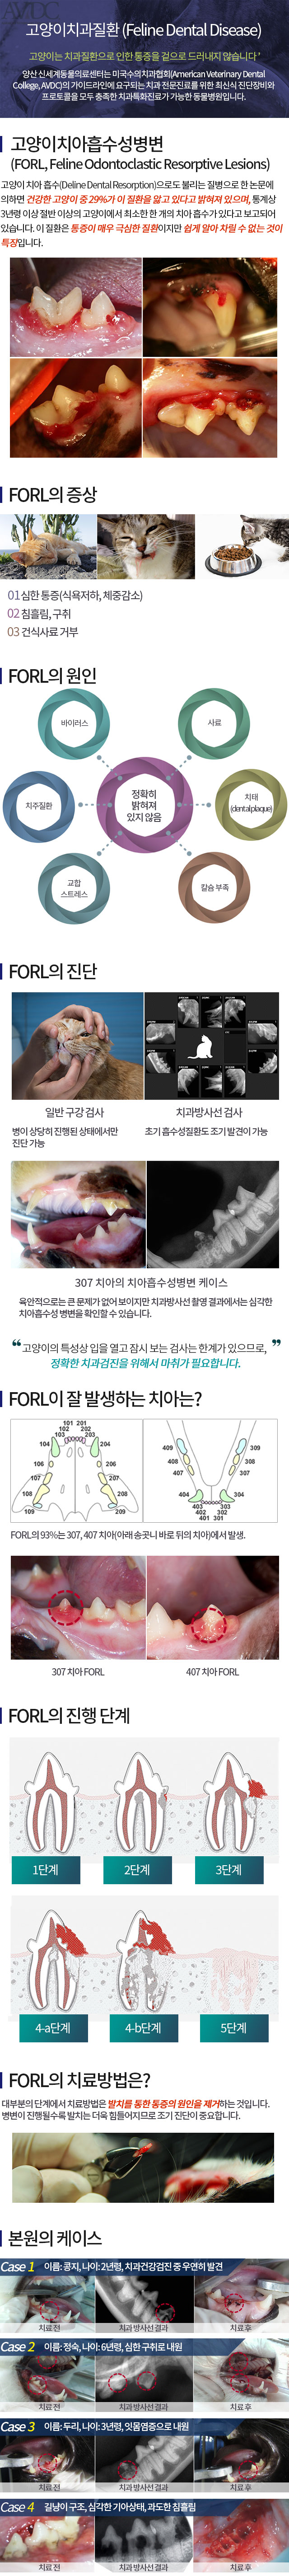 치아흡수성병변